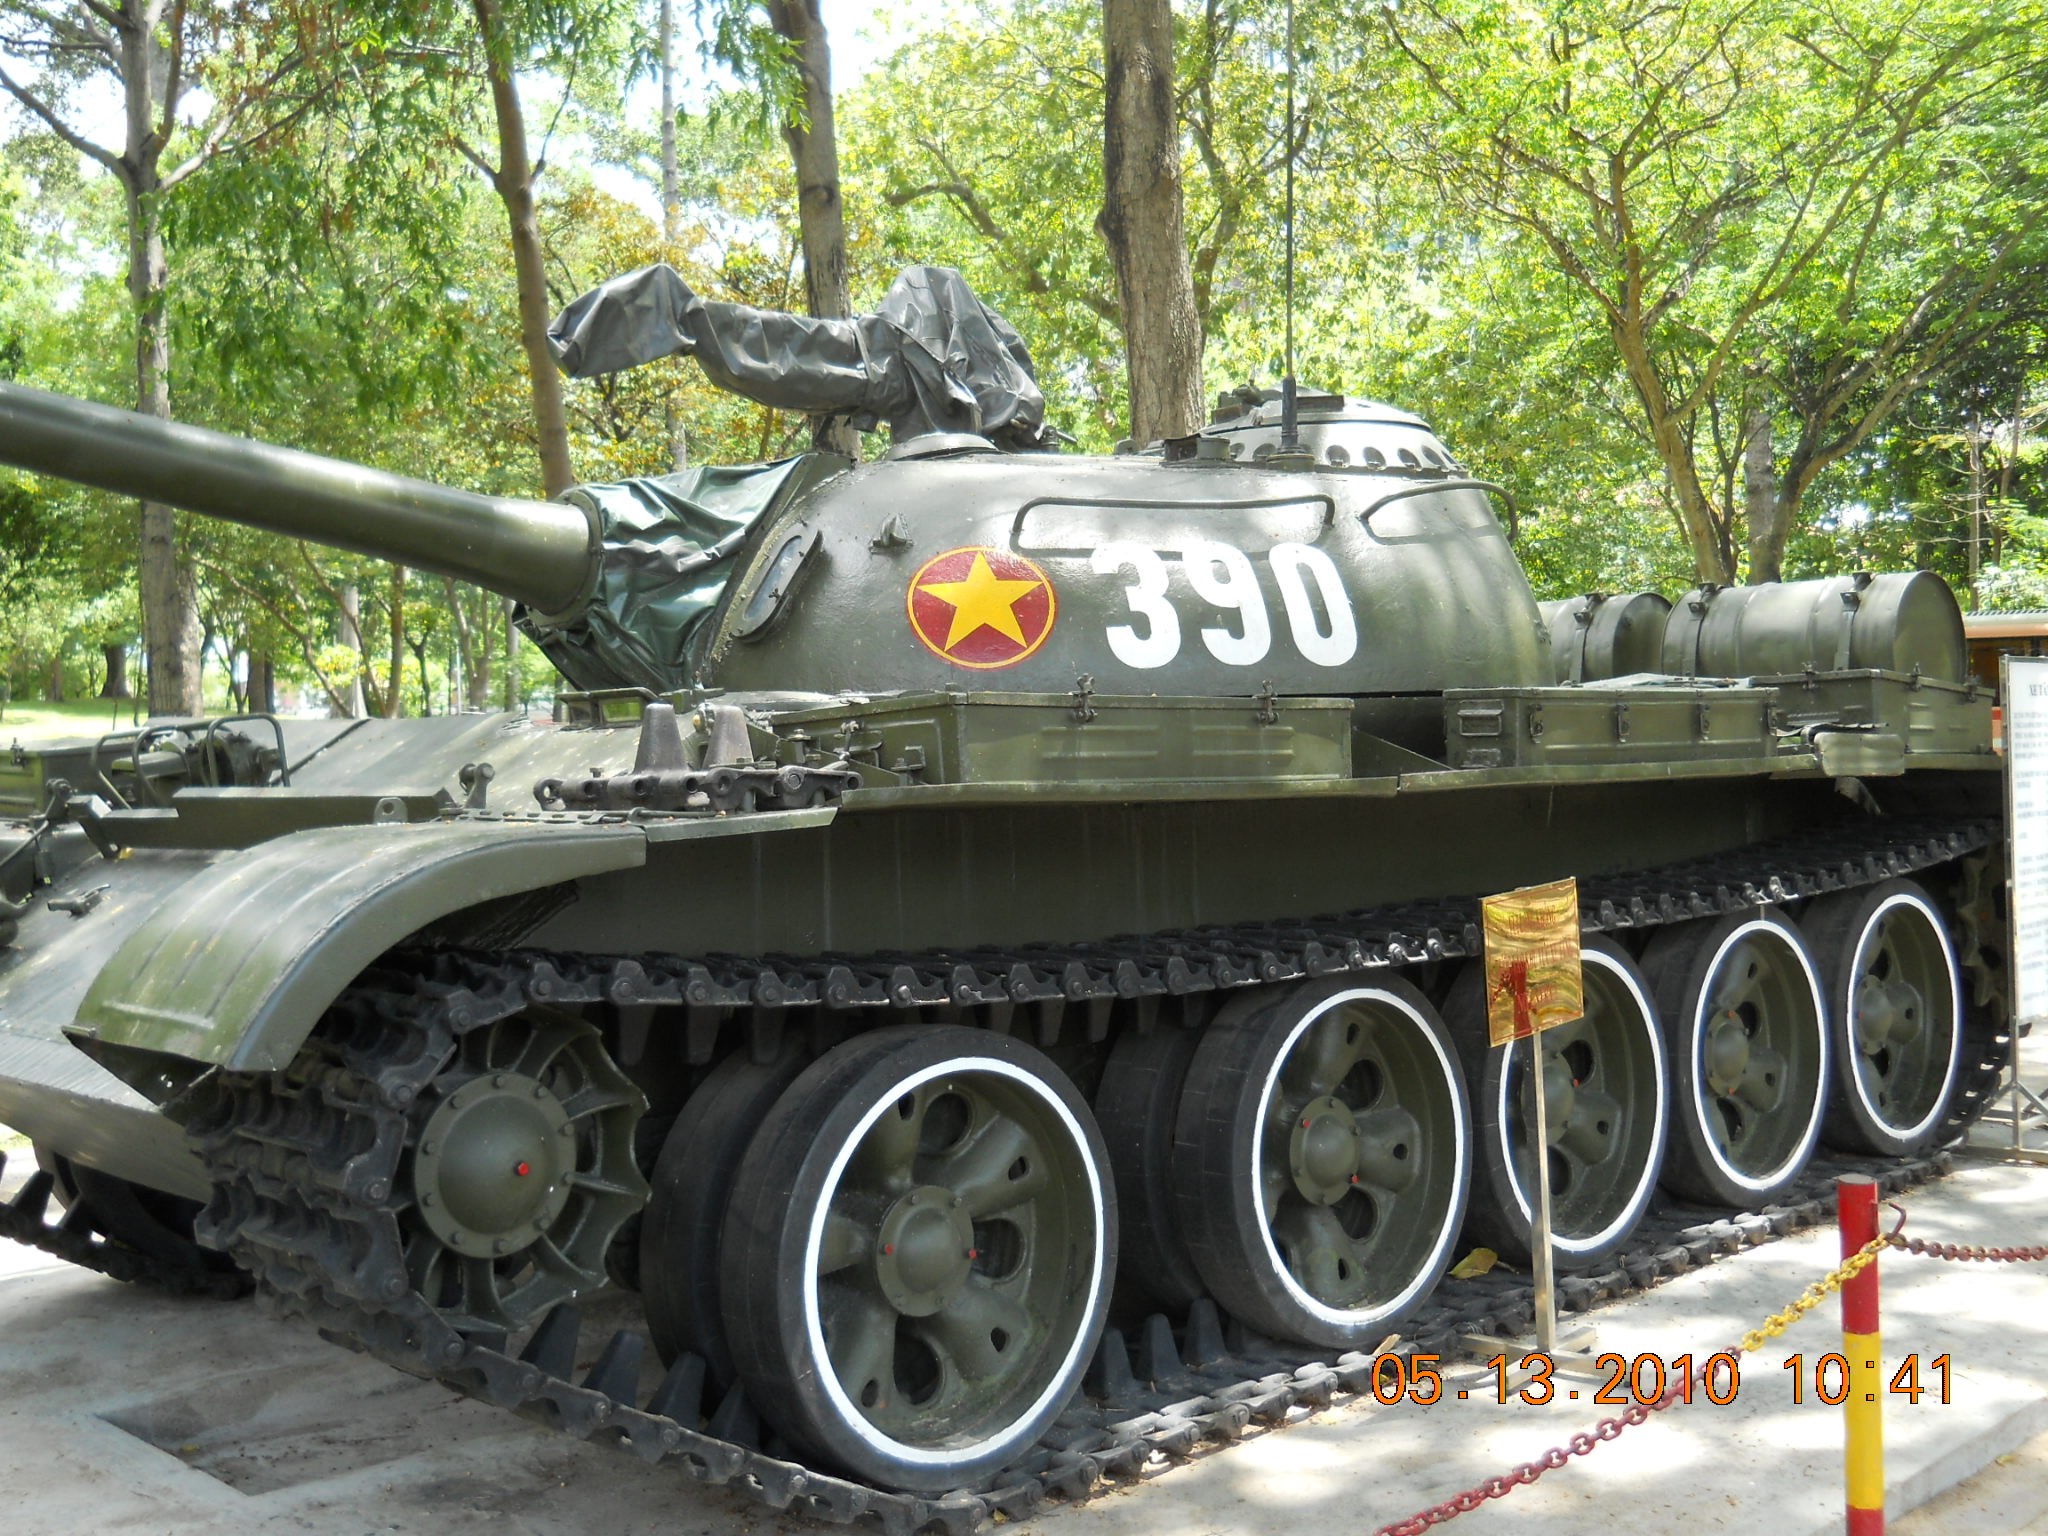 Dinh Độc Lập - nơi tượng trưng cho sự độc lập và tự do của quốc gia Việt Nam. Hãy cùng chiêm ngưỡng những hình ảnh đẹp và ấn tượng tại địa điểm này, nơi được coi là bảo tàng lịch sử và ký ức của dân tộc.